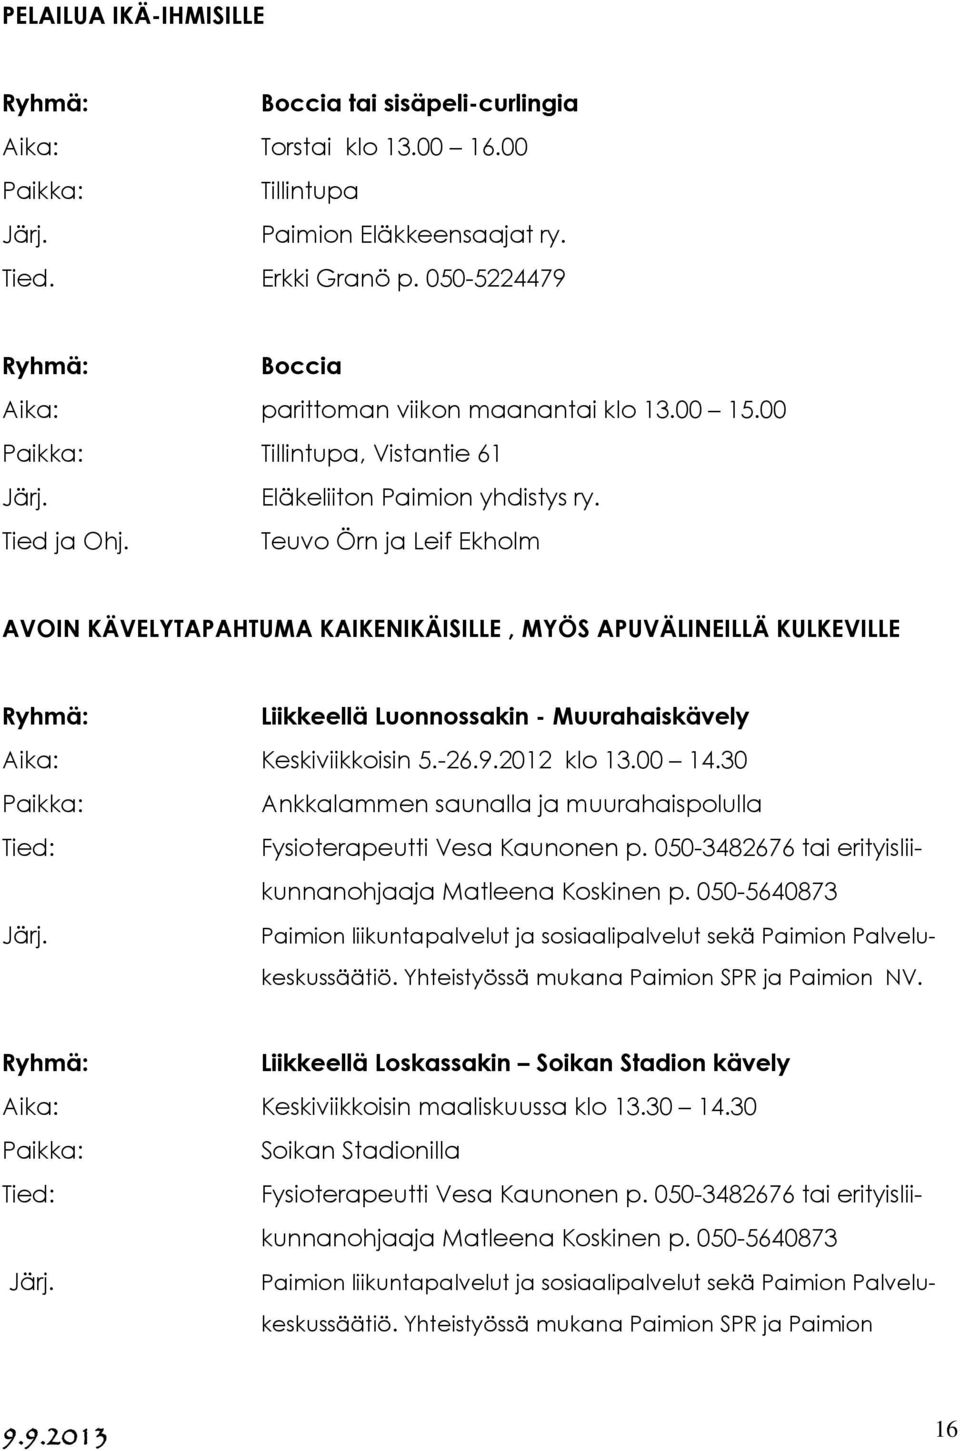 Tied ja Teuvo Örn ja Leif Ekholm AVOIN KÄVELYTAPAHTUMA KAIKENIKÄISILLE, MYÖS APUVÄLINEILLÄ KULKEVILLE Liikkeellä Luonnossakin - Muurahaiskävely Aika: Keskiviikkoisin 5.-26.9.2012 klo 13.00 14.